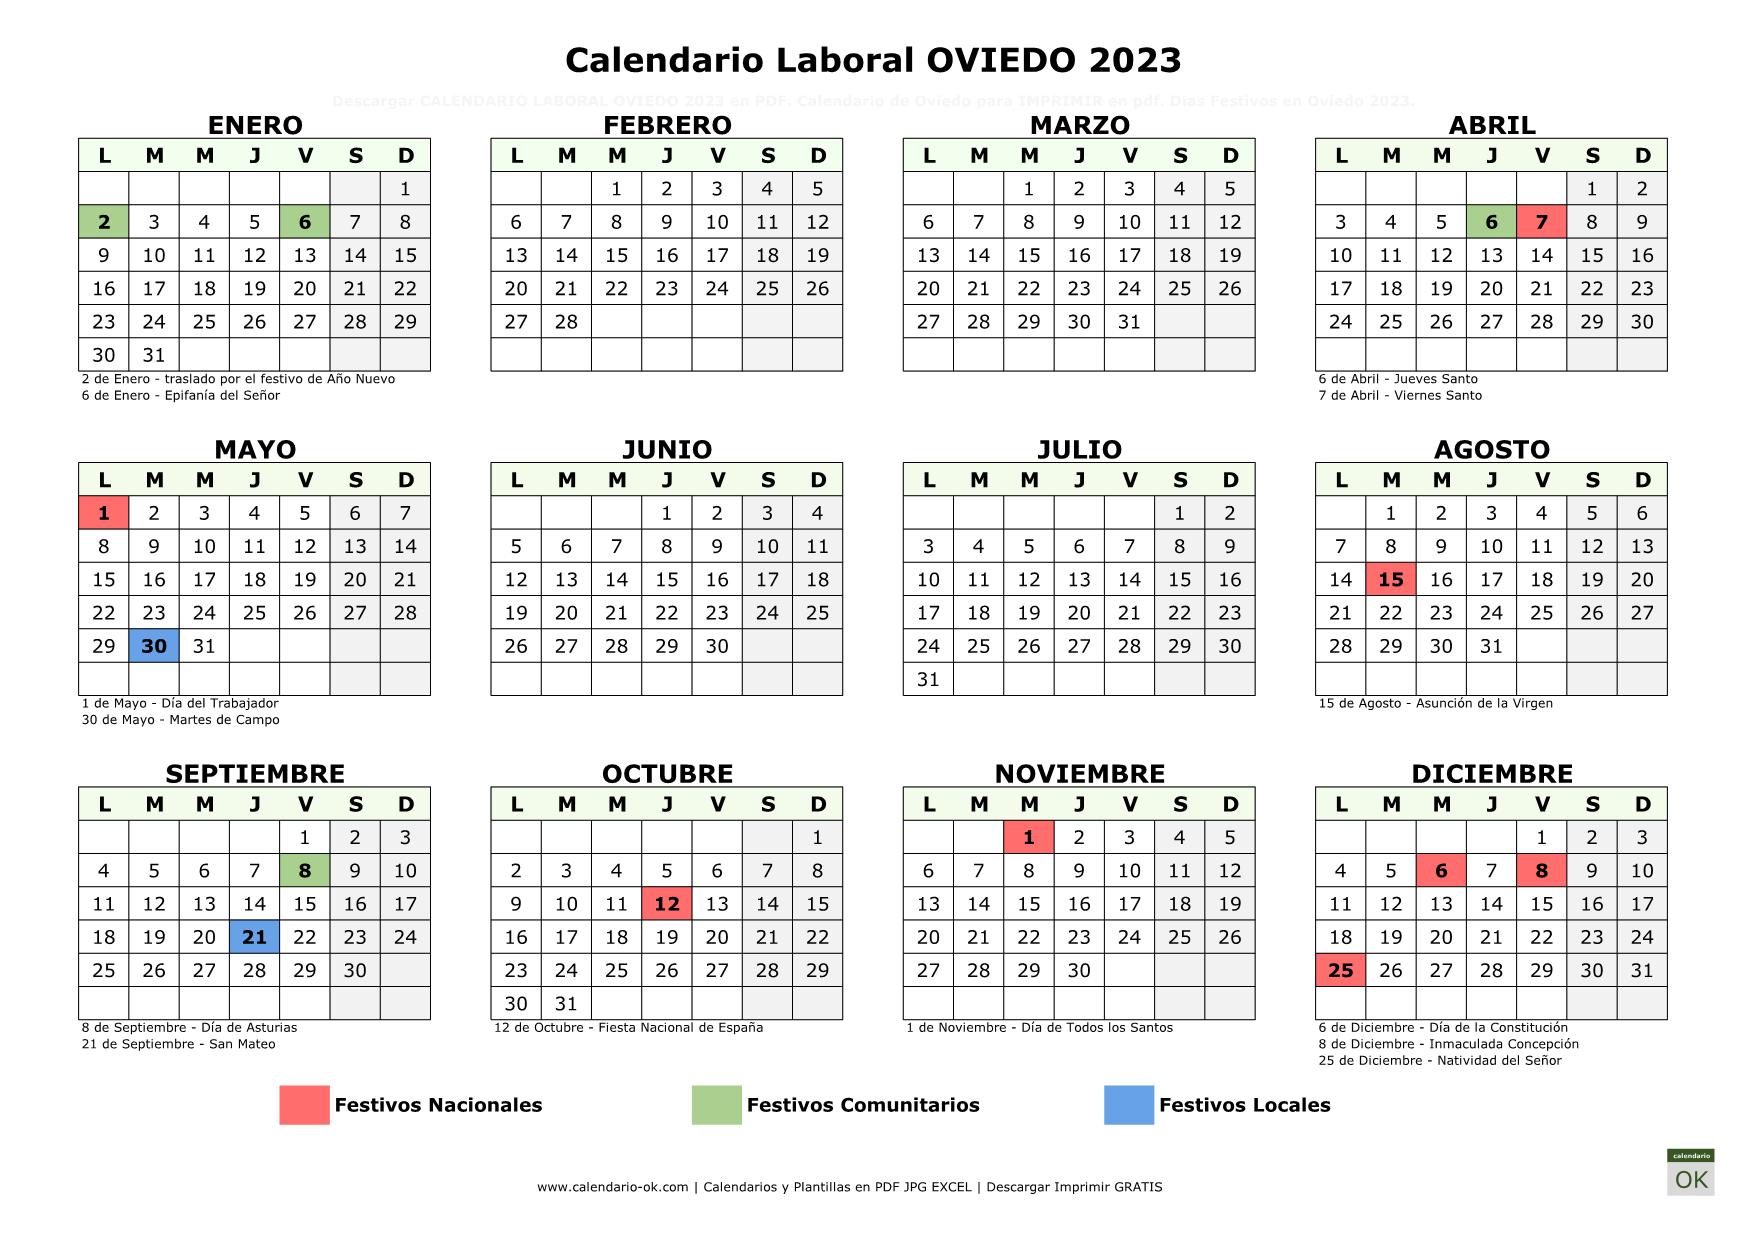 Calendario Laboral Oviedo 2023 horizontal